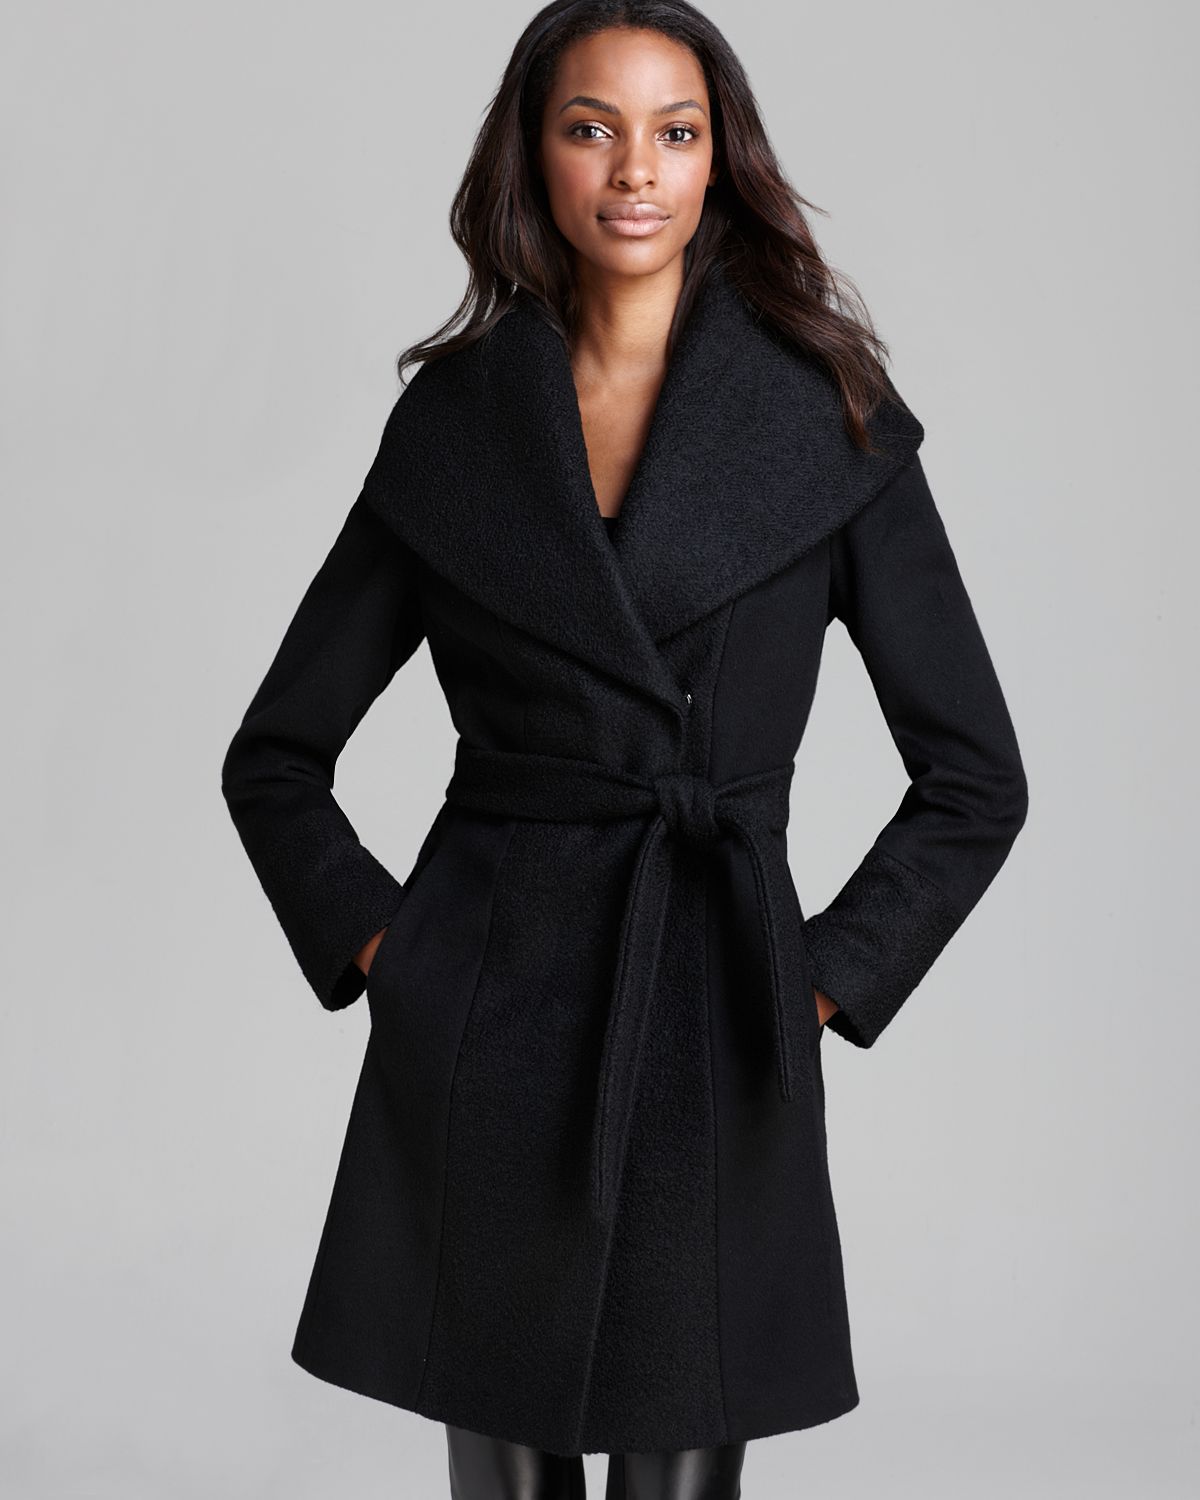 Floor length black wool coat